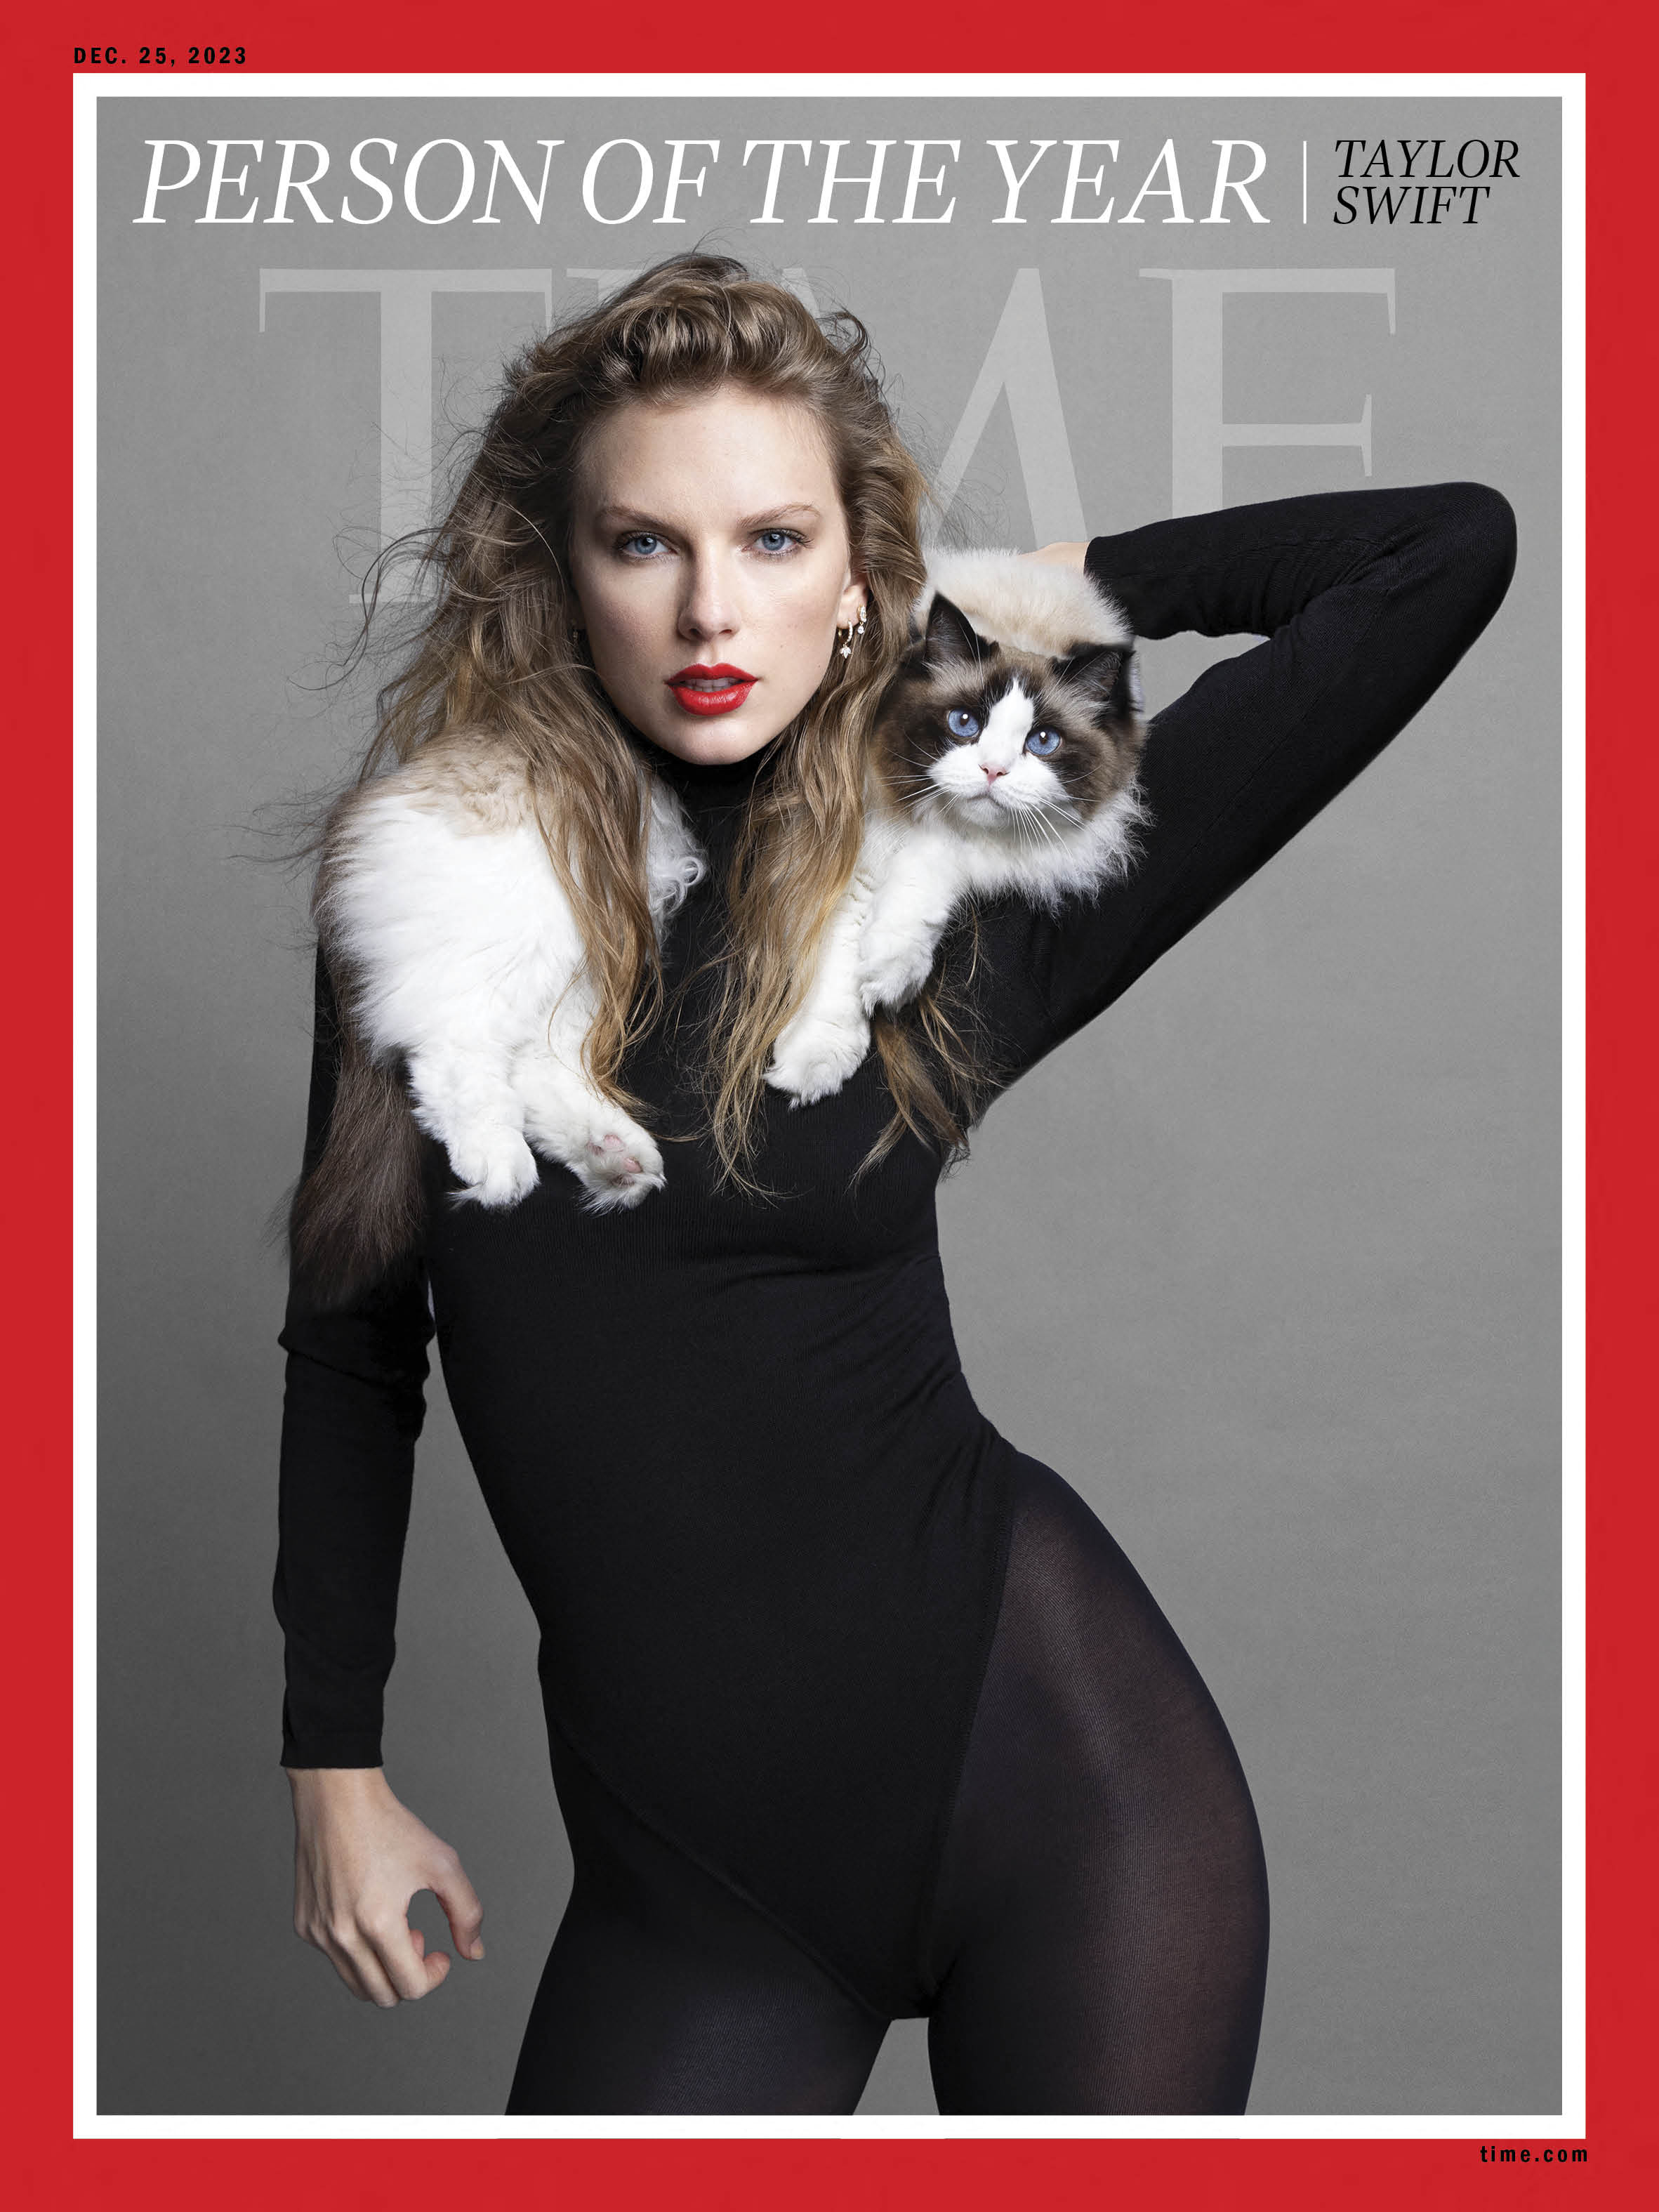 Das Time Magazine ernannte Taylor Swift zur Person des Jahres